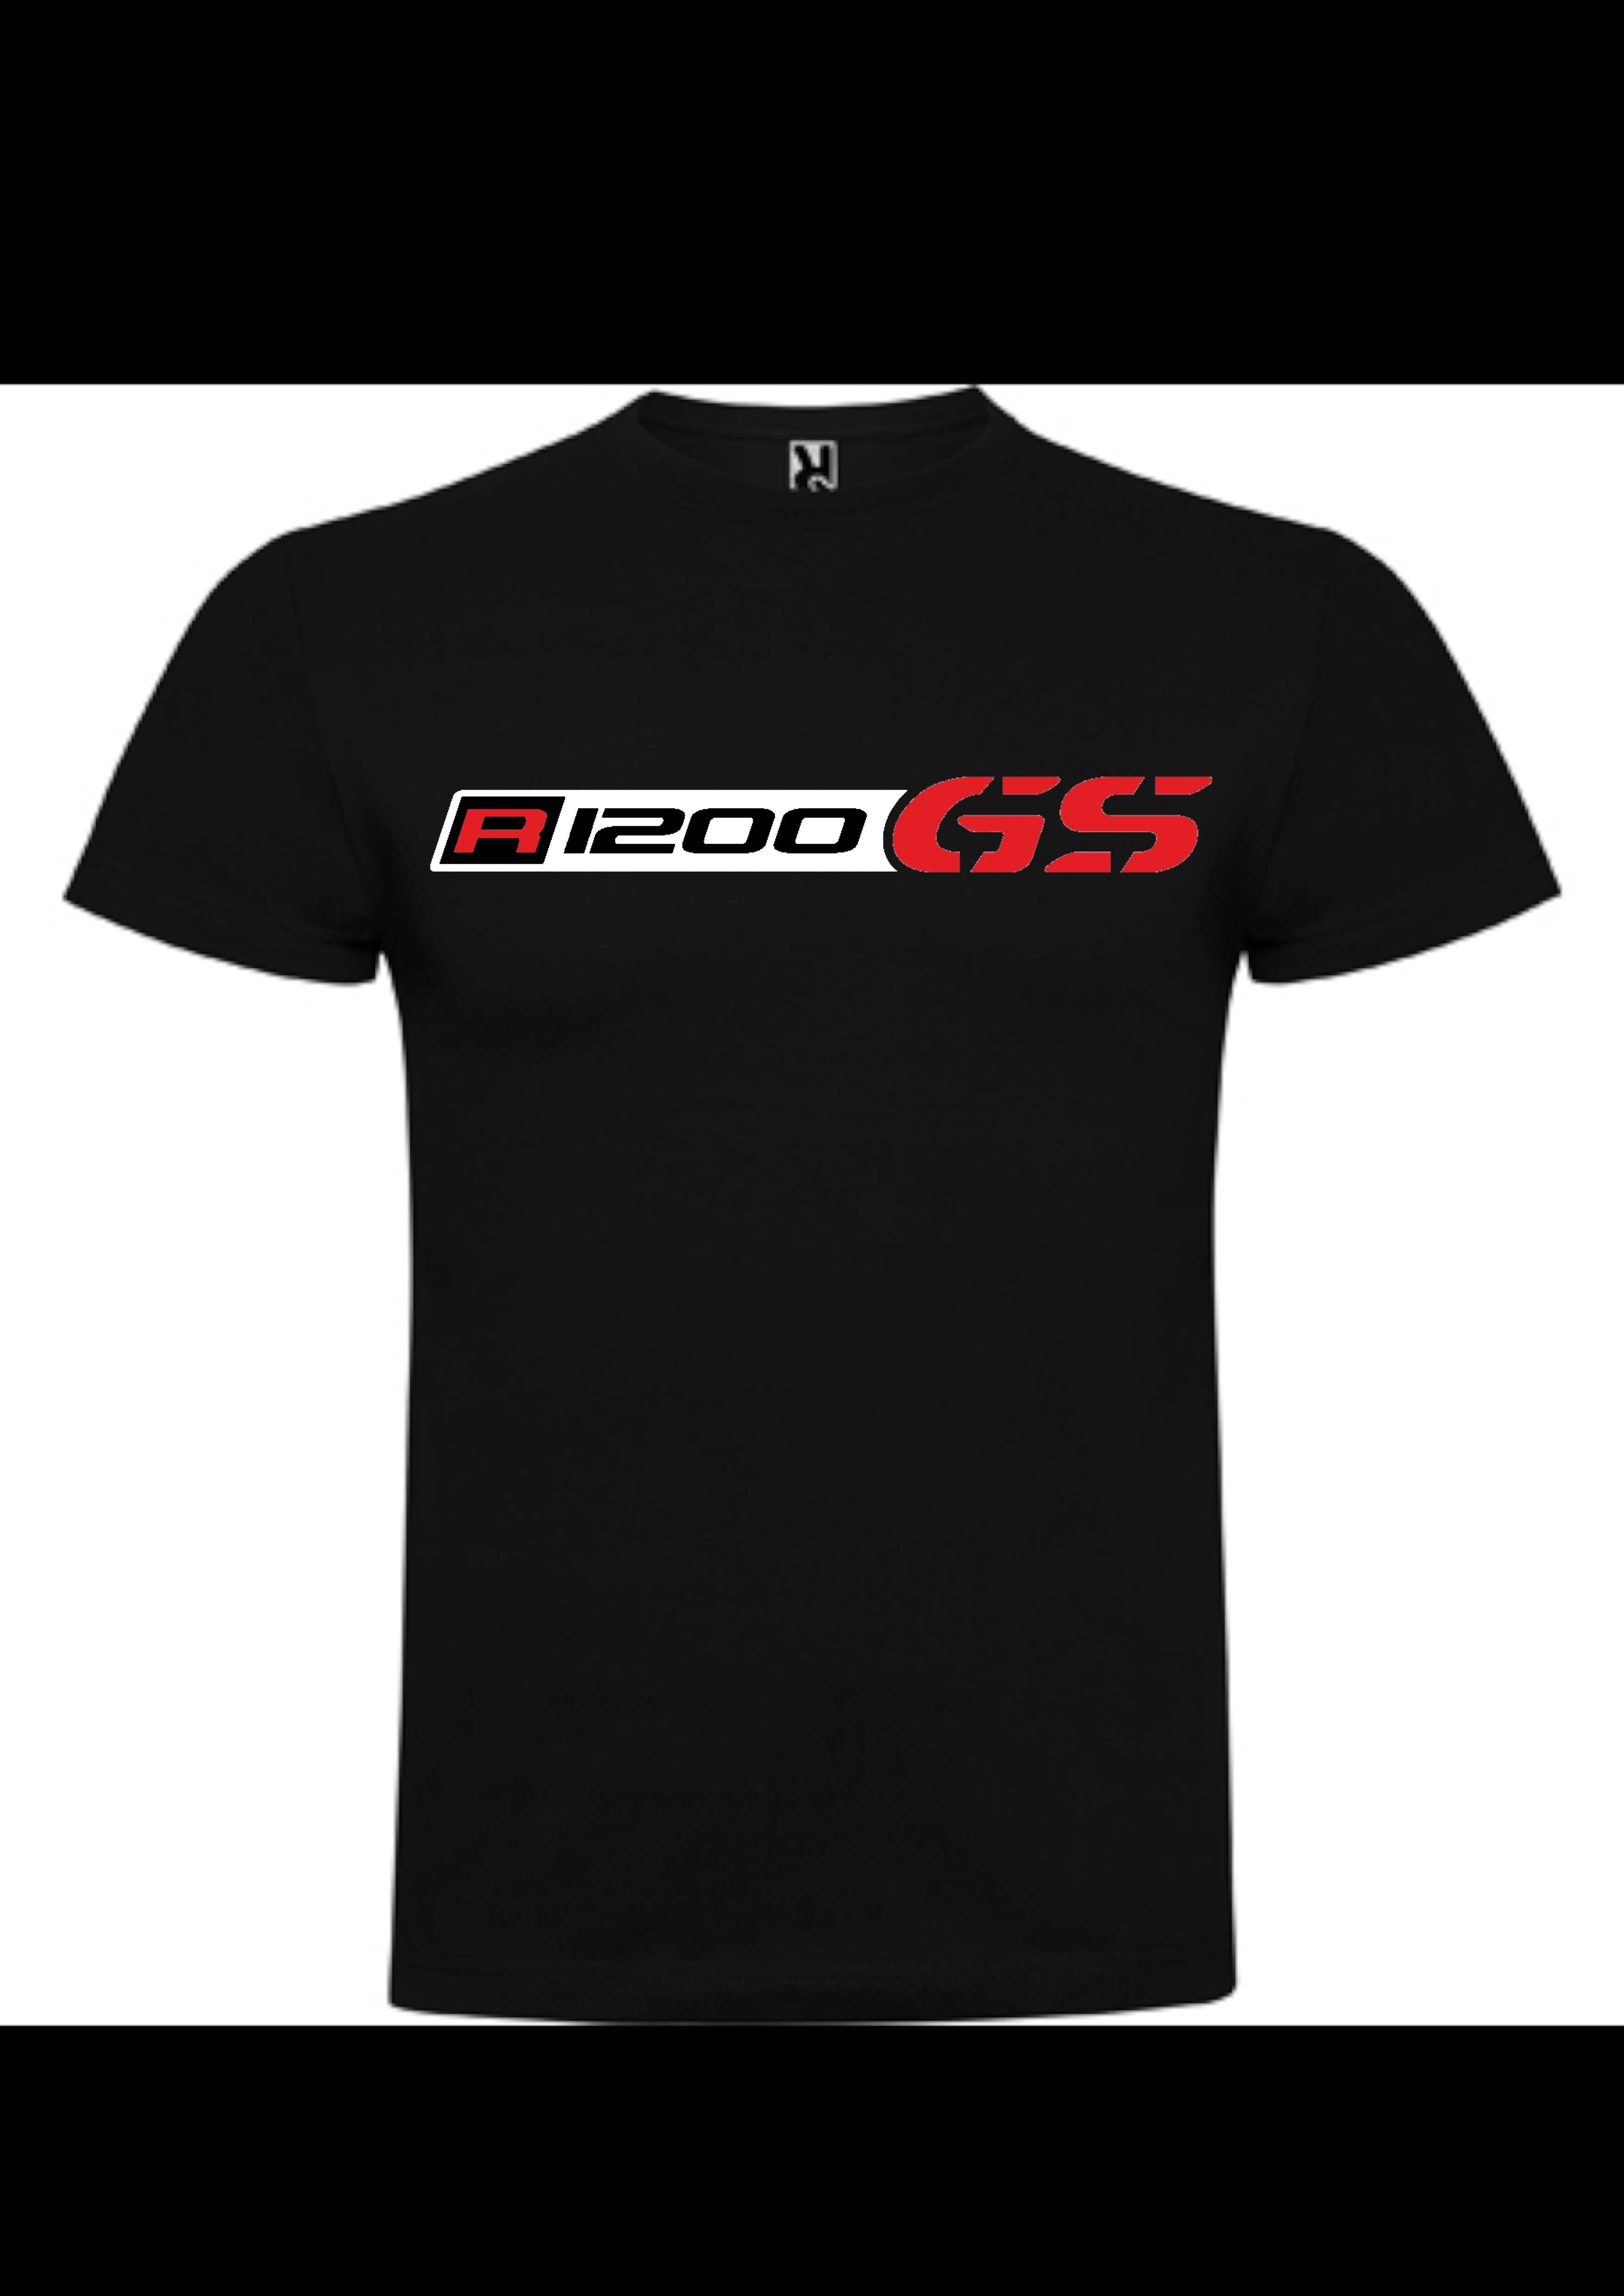 T-shirt R1200 GS